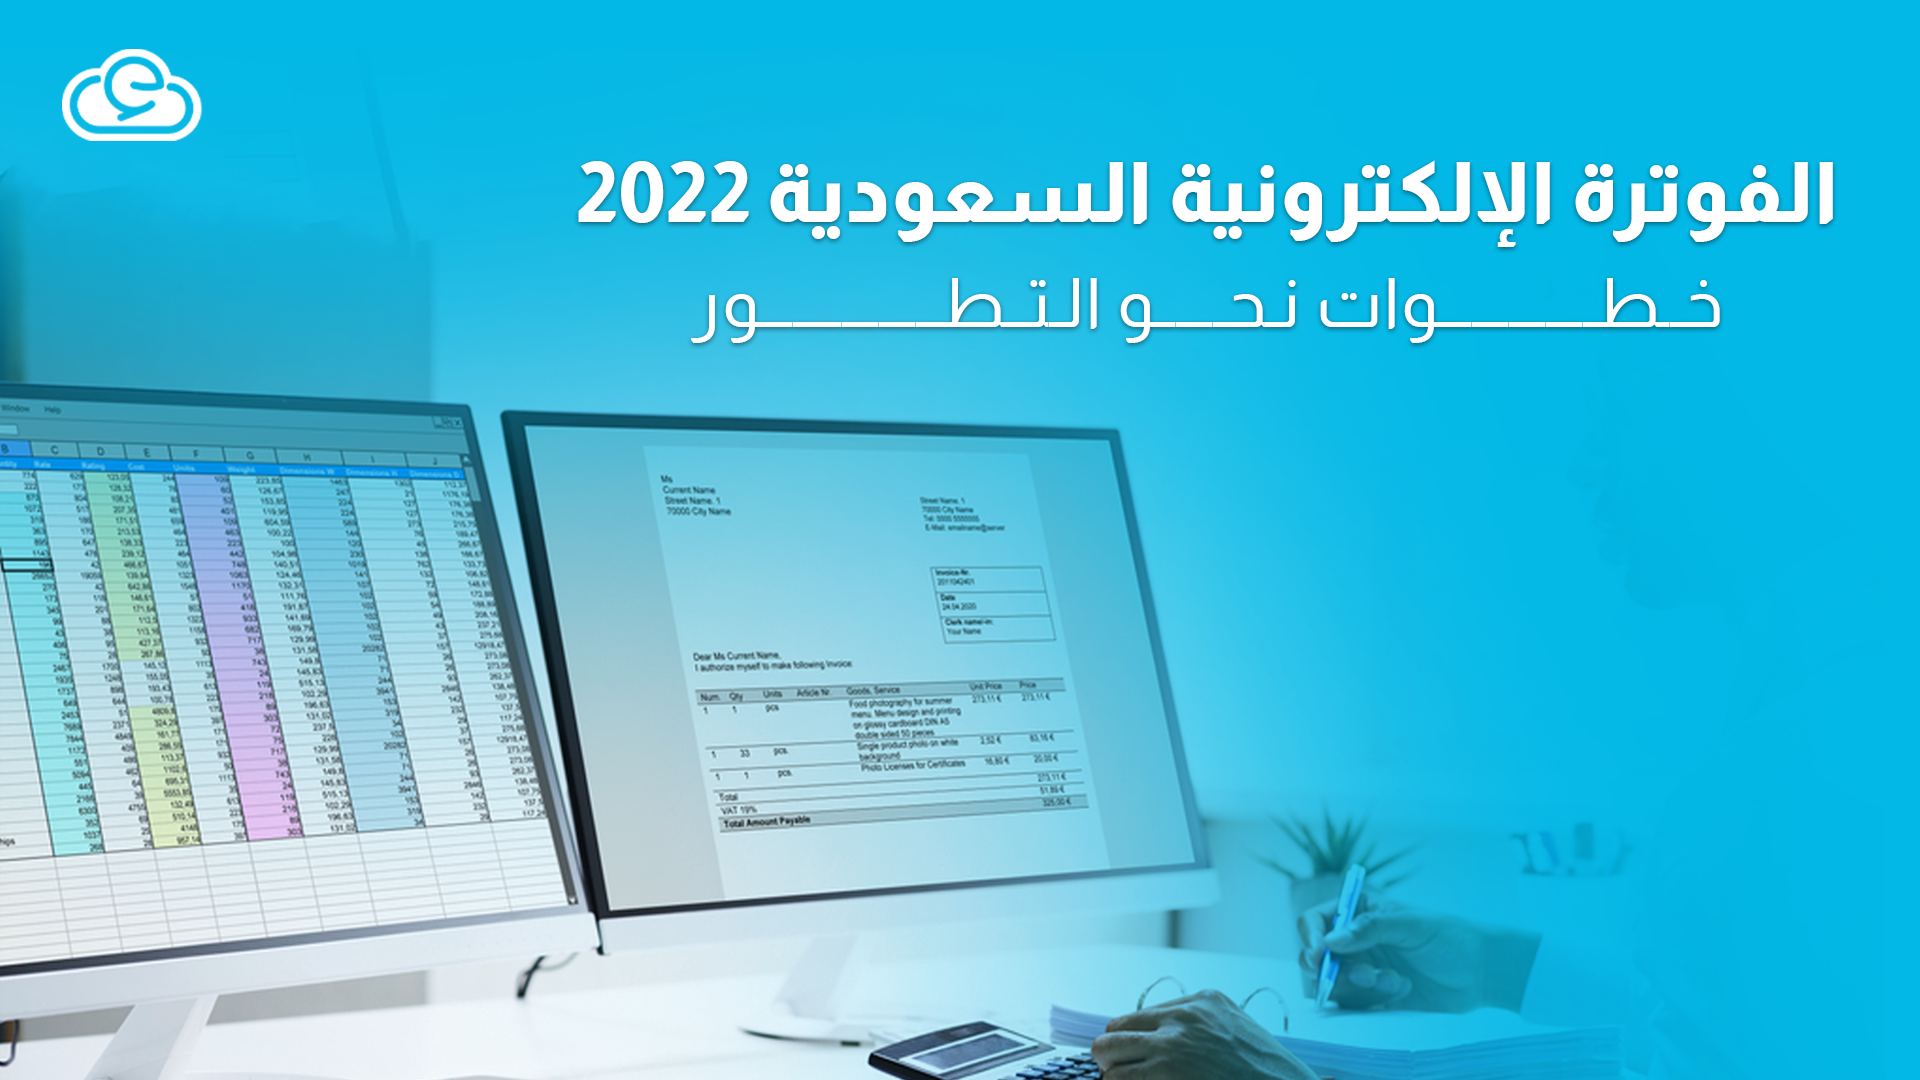 الفوترة الإلكترونية السعودية 2022 | خطوات نحو التطور